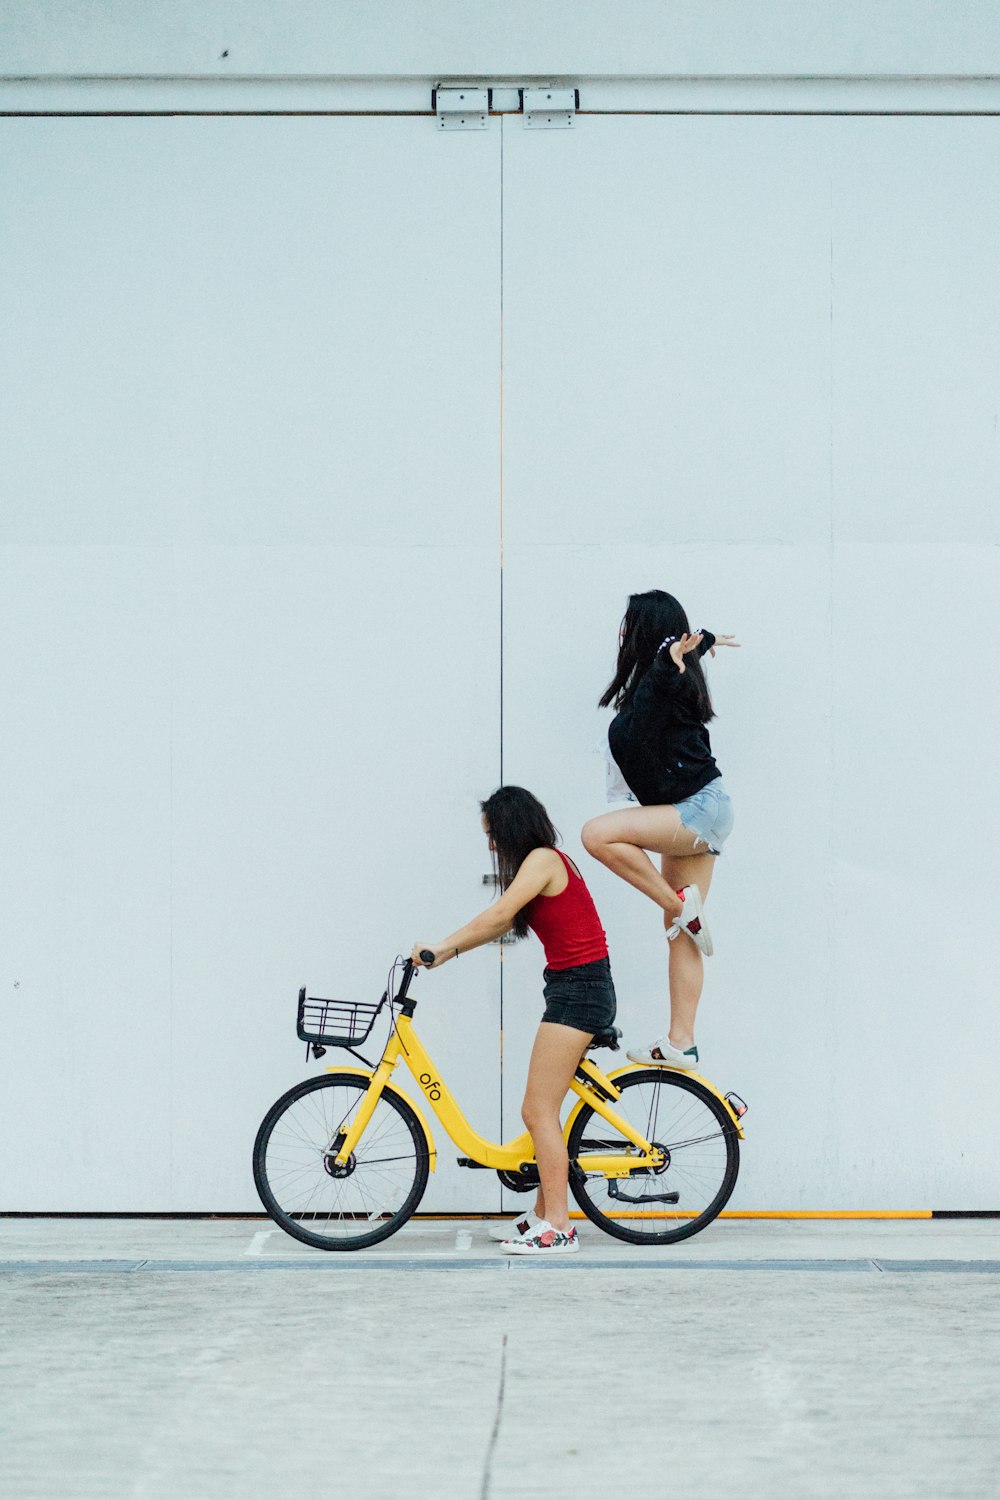 벽 근처 리어 펜더에 서 있는 다른 여성과 자전거를 타고 있는 여자